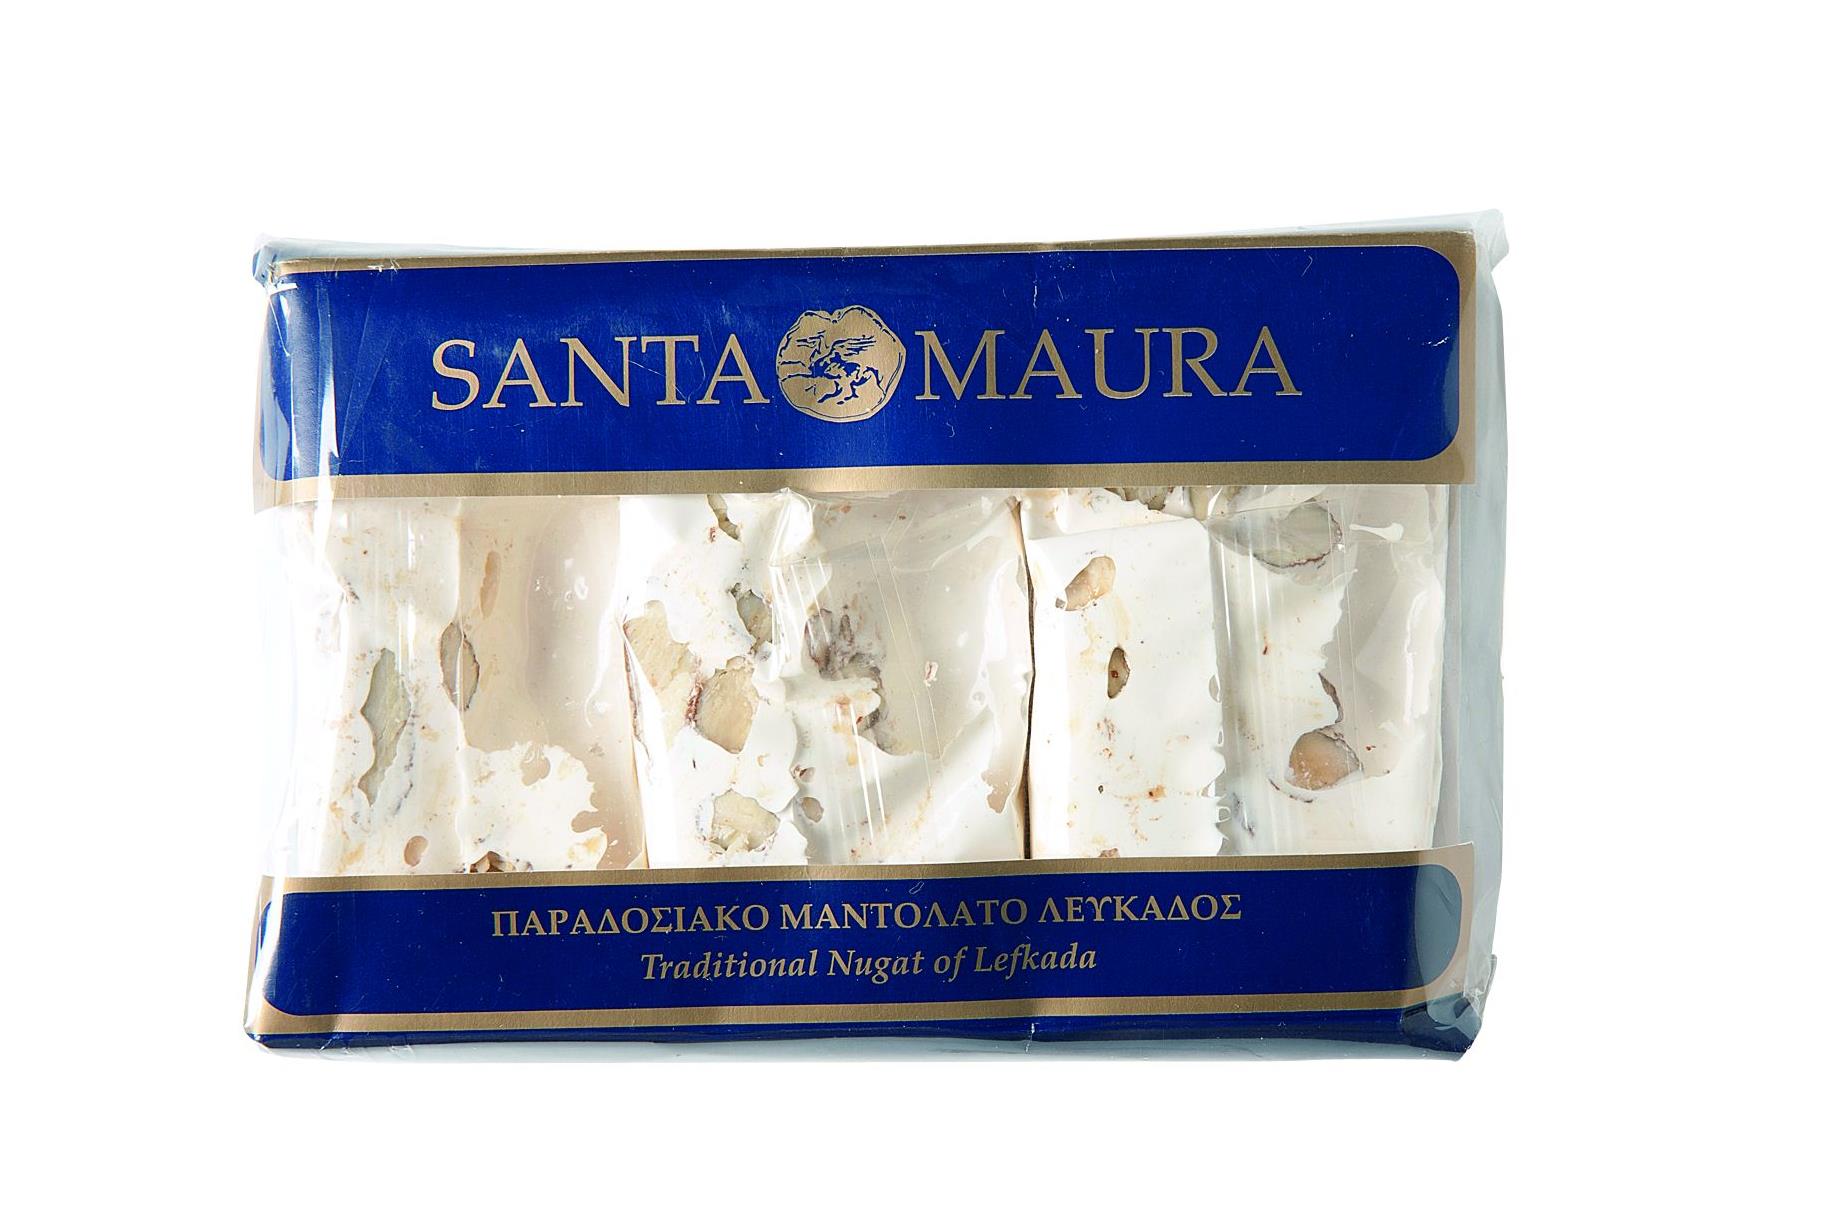 Santa Maura